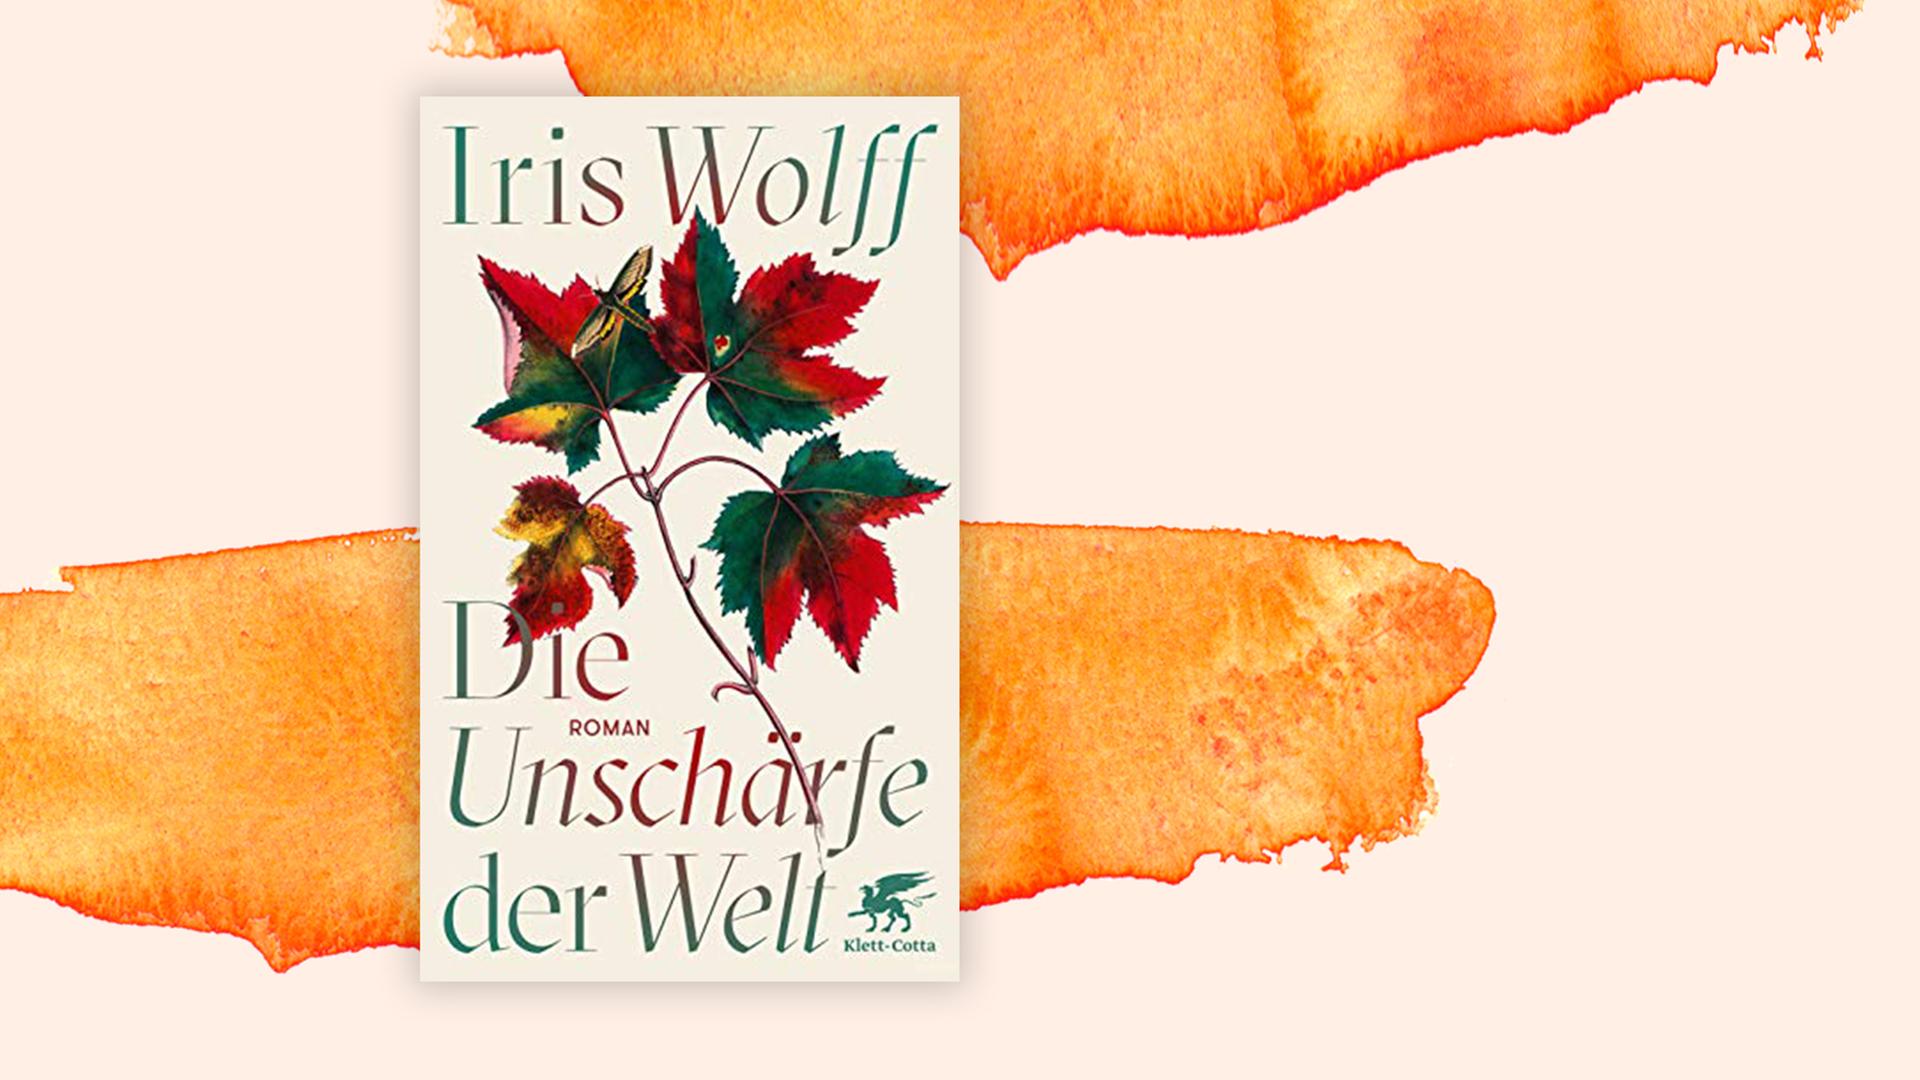 Cover von Iris Wolff "Die Unschärfe der Welt" vor Aquarell-Hintergrund